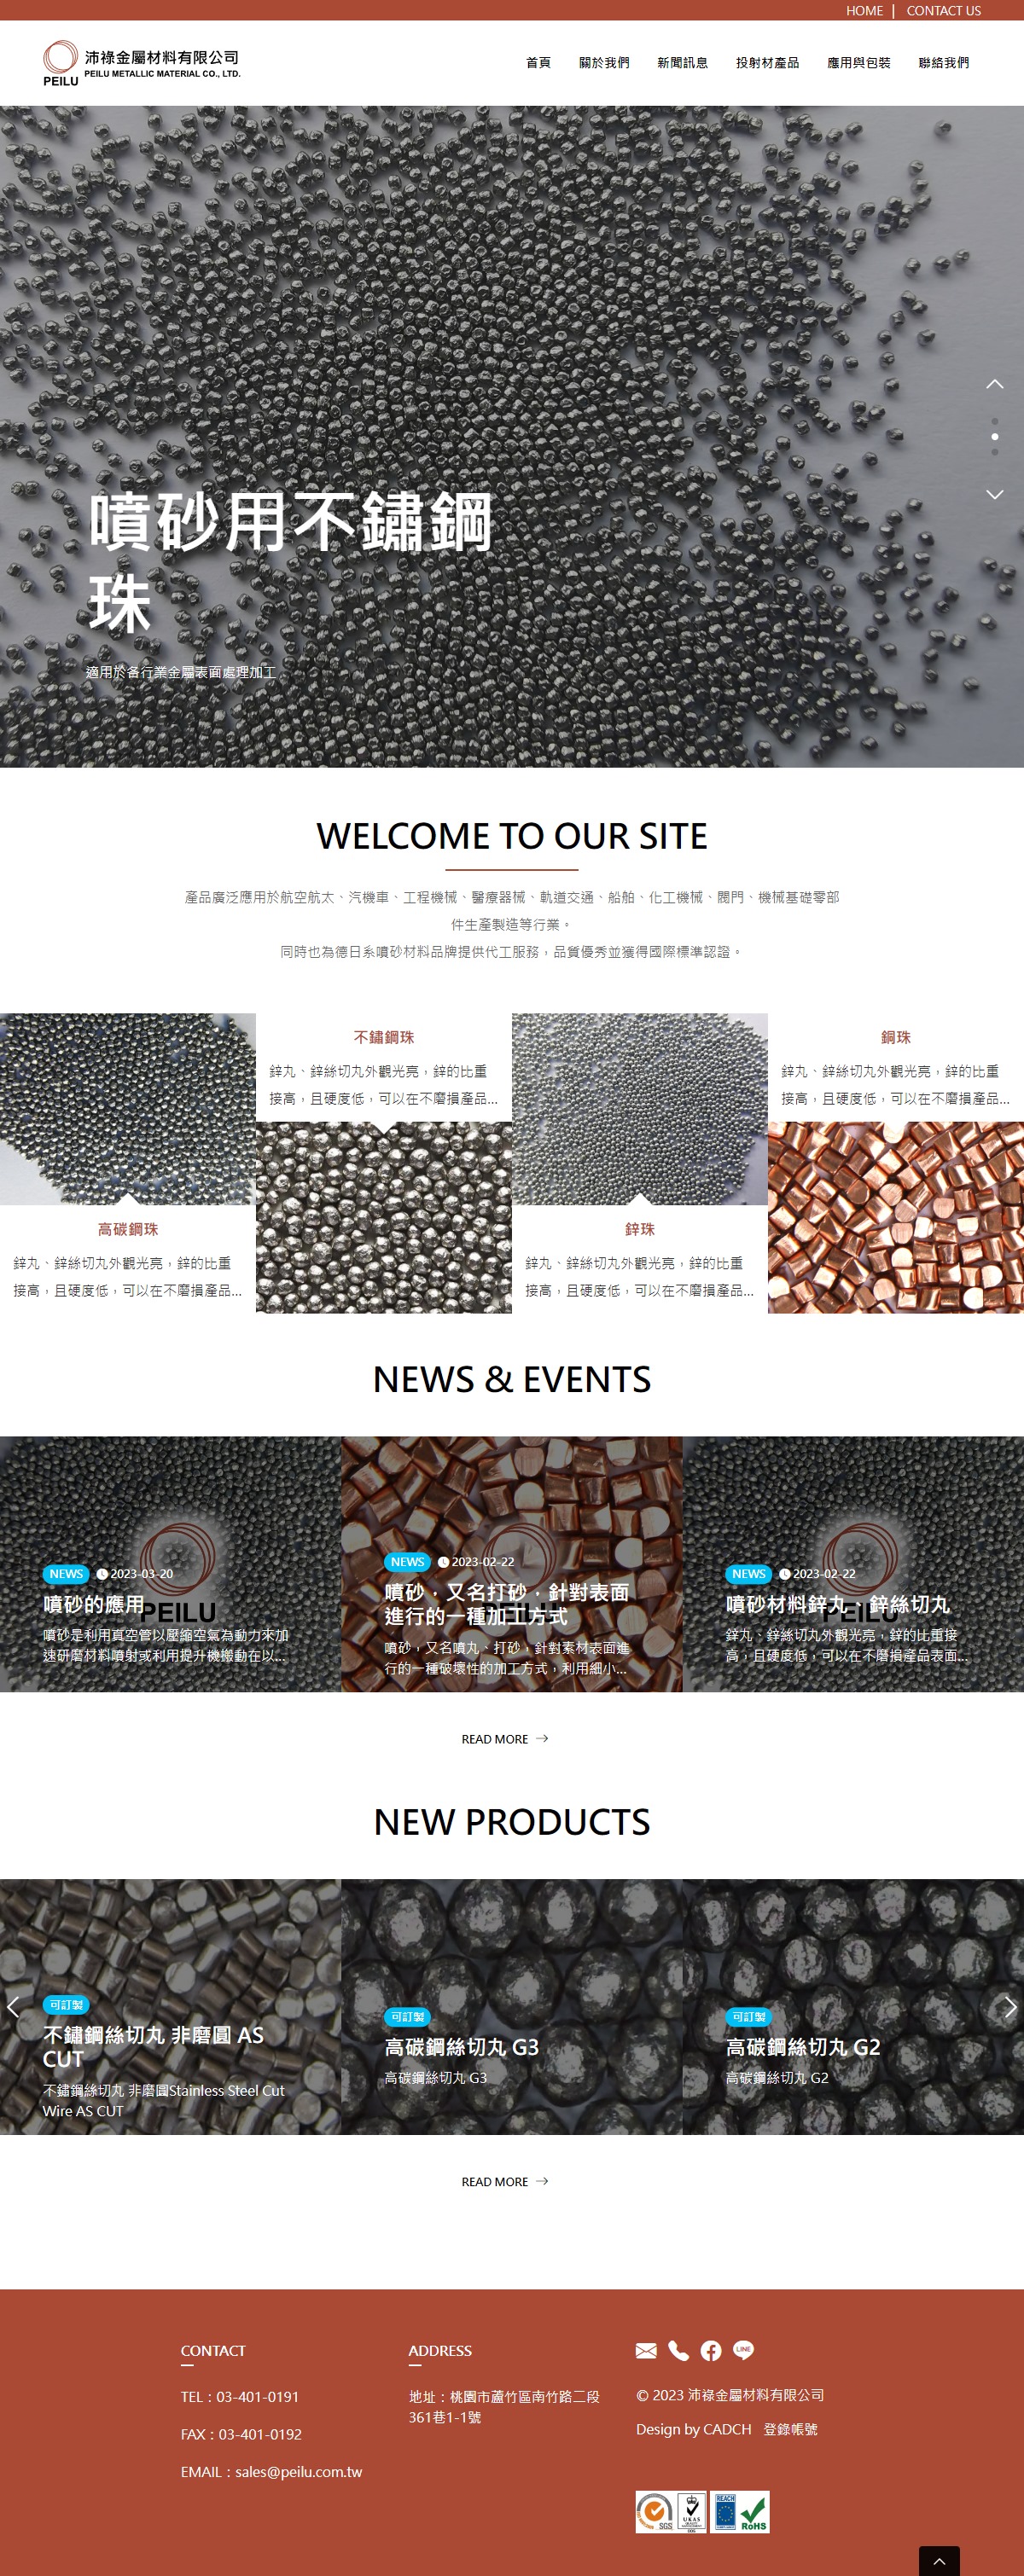 噴砂材料製造廠網頁設計示意圖